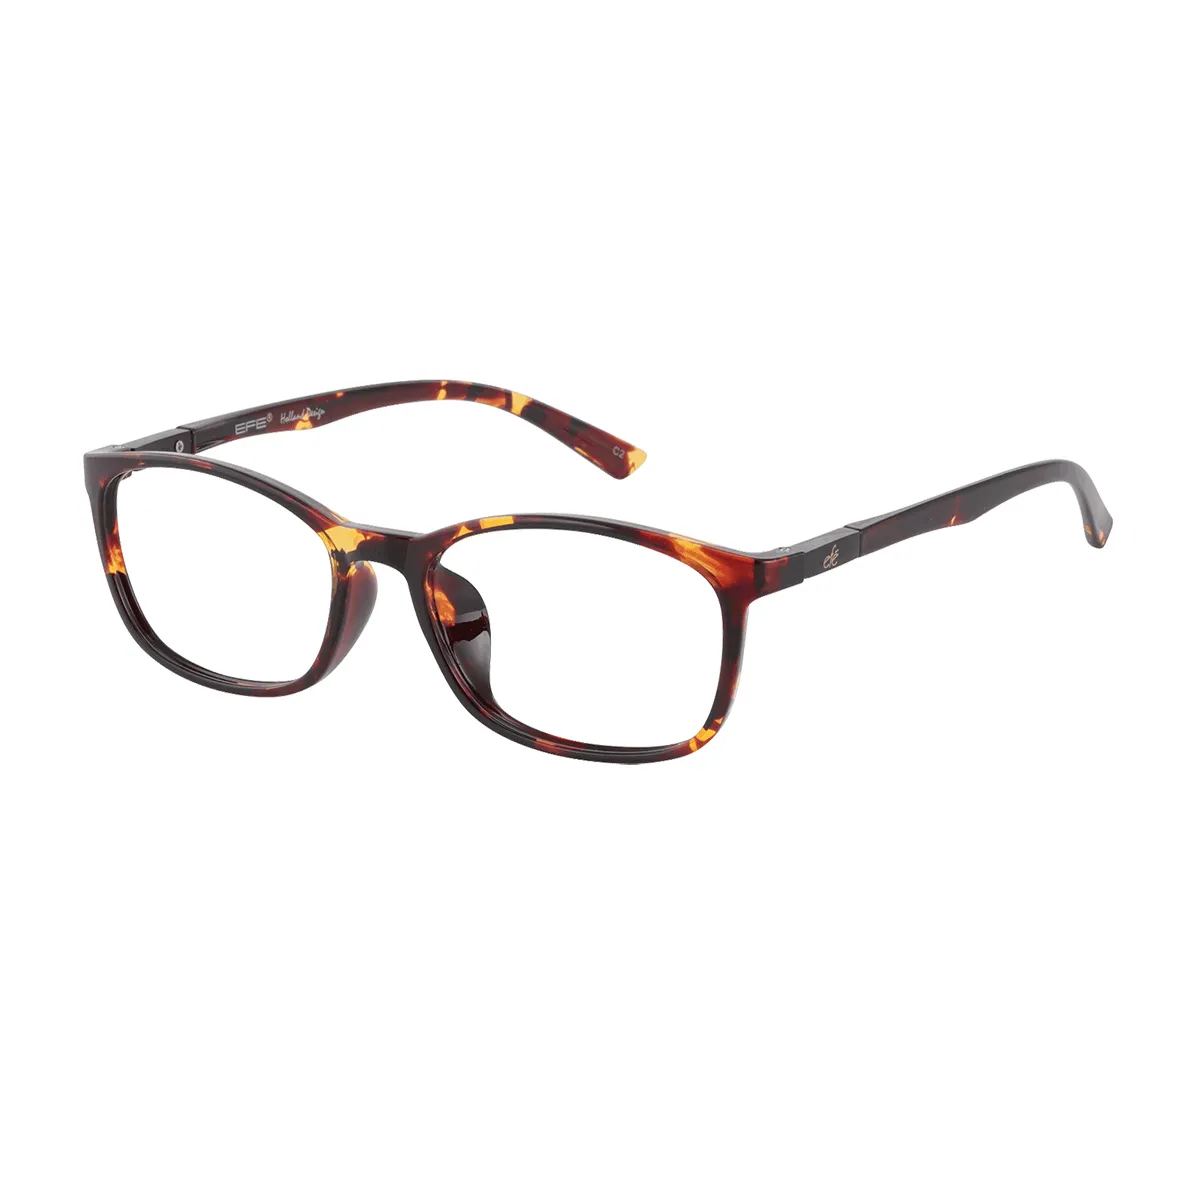 Bledsoe - Rectangle Tortoiseshell Glasses for Men & Women